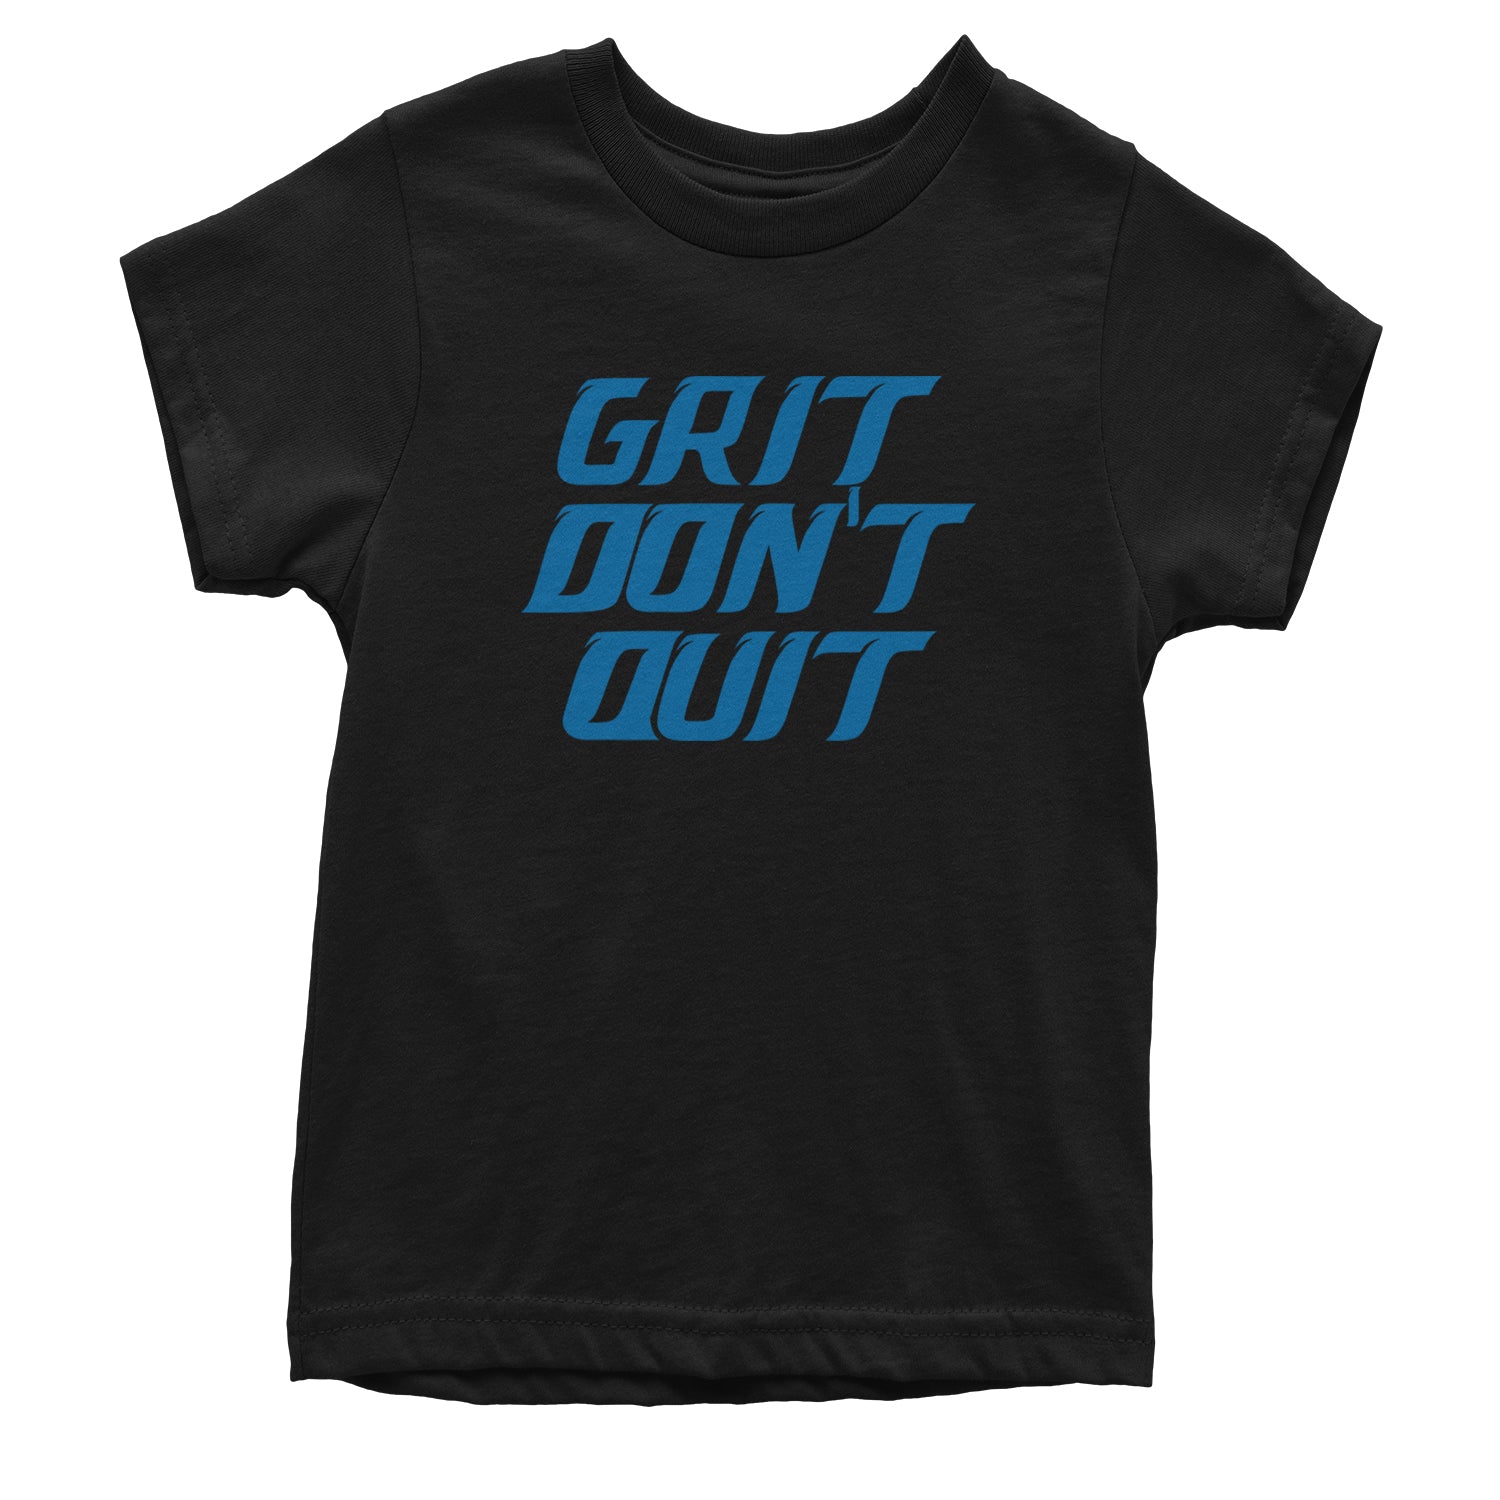 Detroit Grit Don't Quit Youth T-shirt